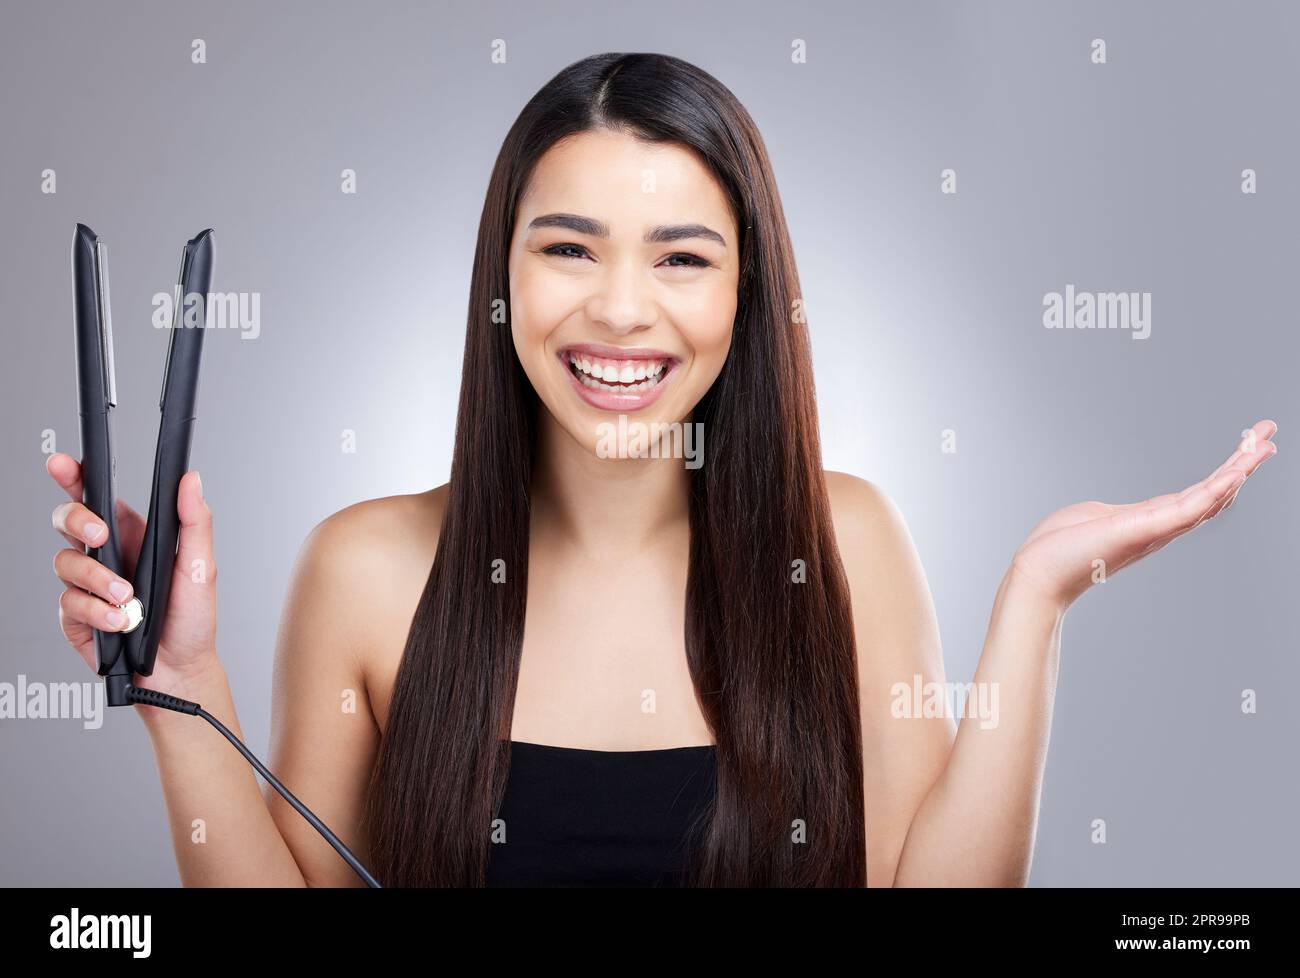 È davvero uno strumento di meraviglia per le donne. Ritratto di studio di una giovane donna attraente utilizzando un ferro piatto per raddrizzare i capelli su uno sfondo grigio. Foto Stock